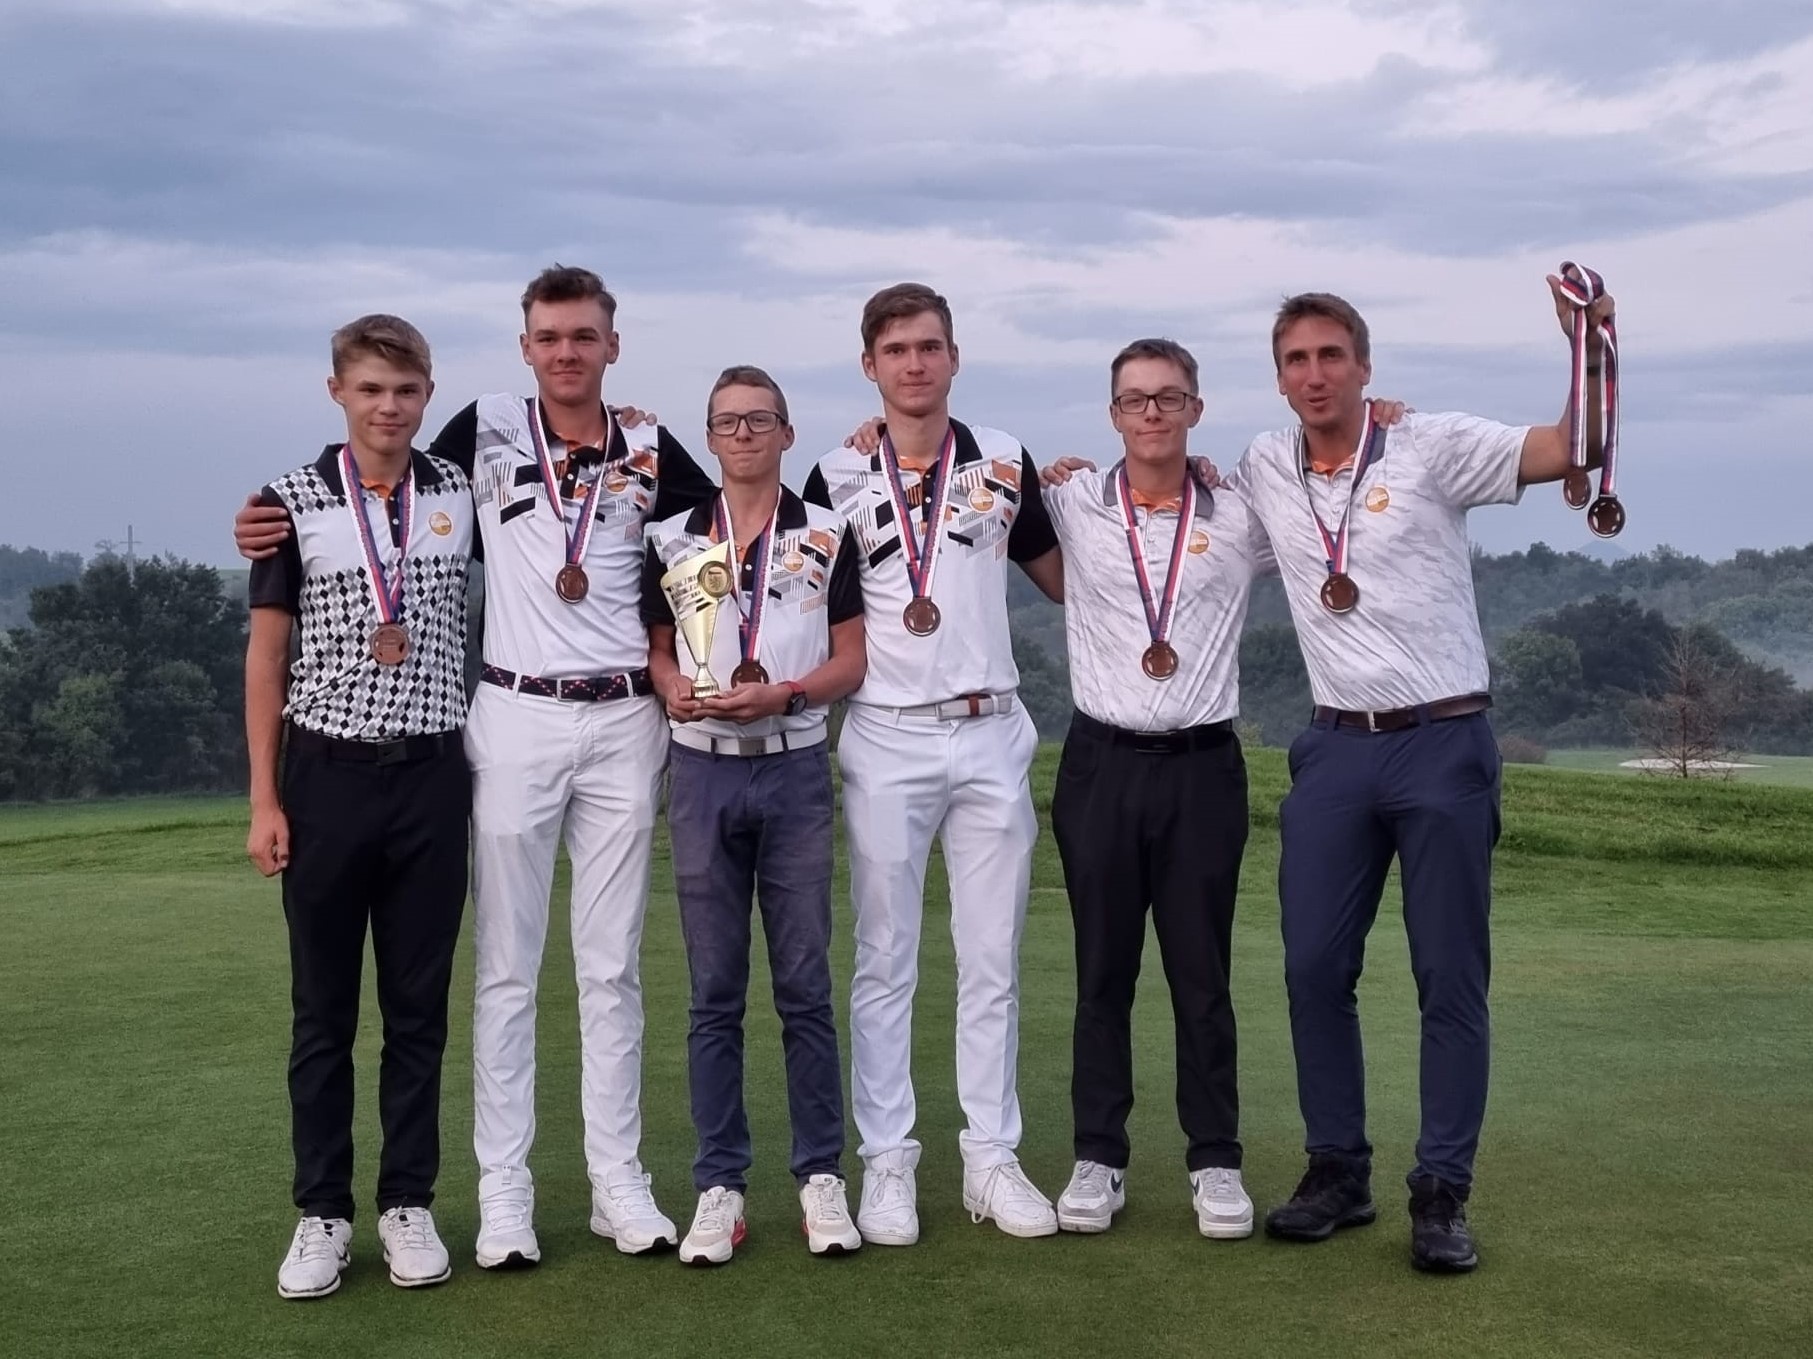 Chlapci do 18 let získali 3. místo na Mistrovství ČR družstev